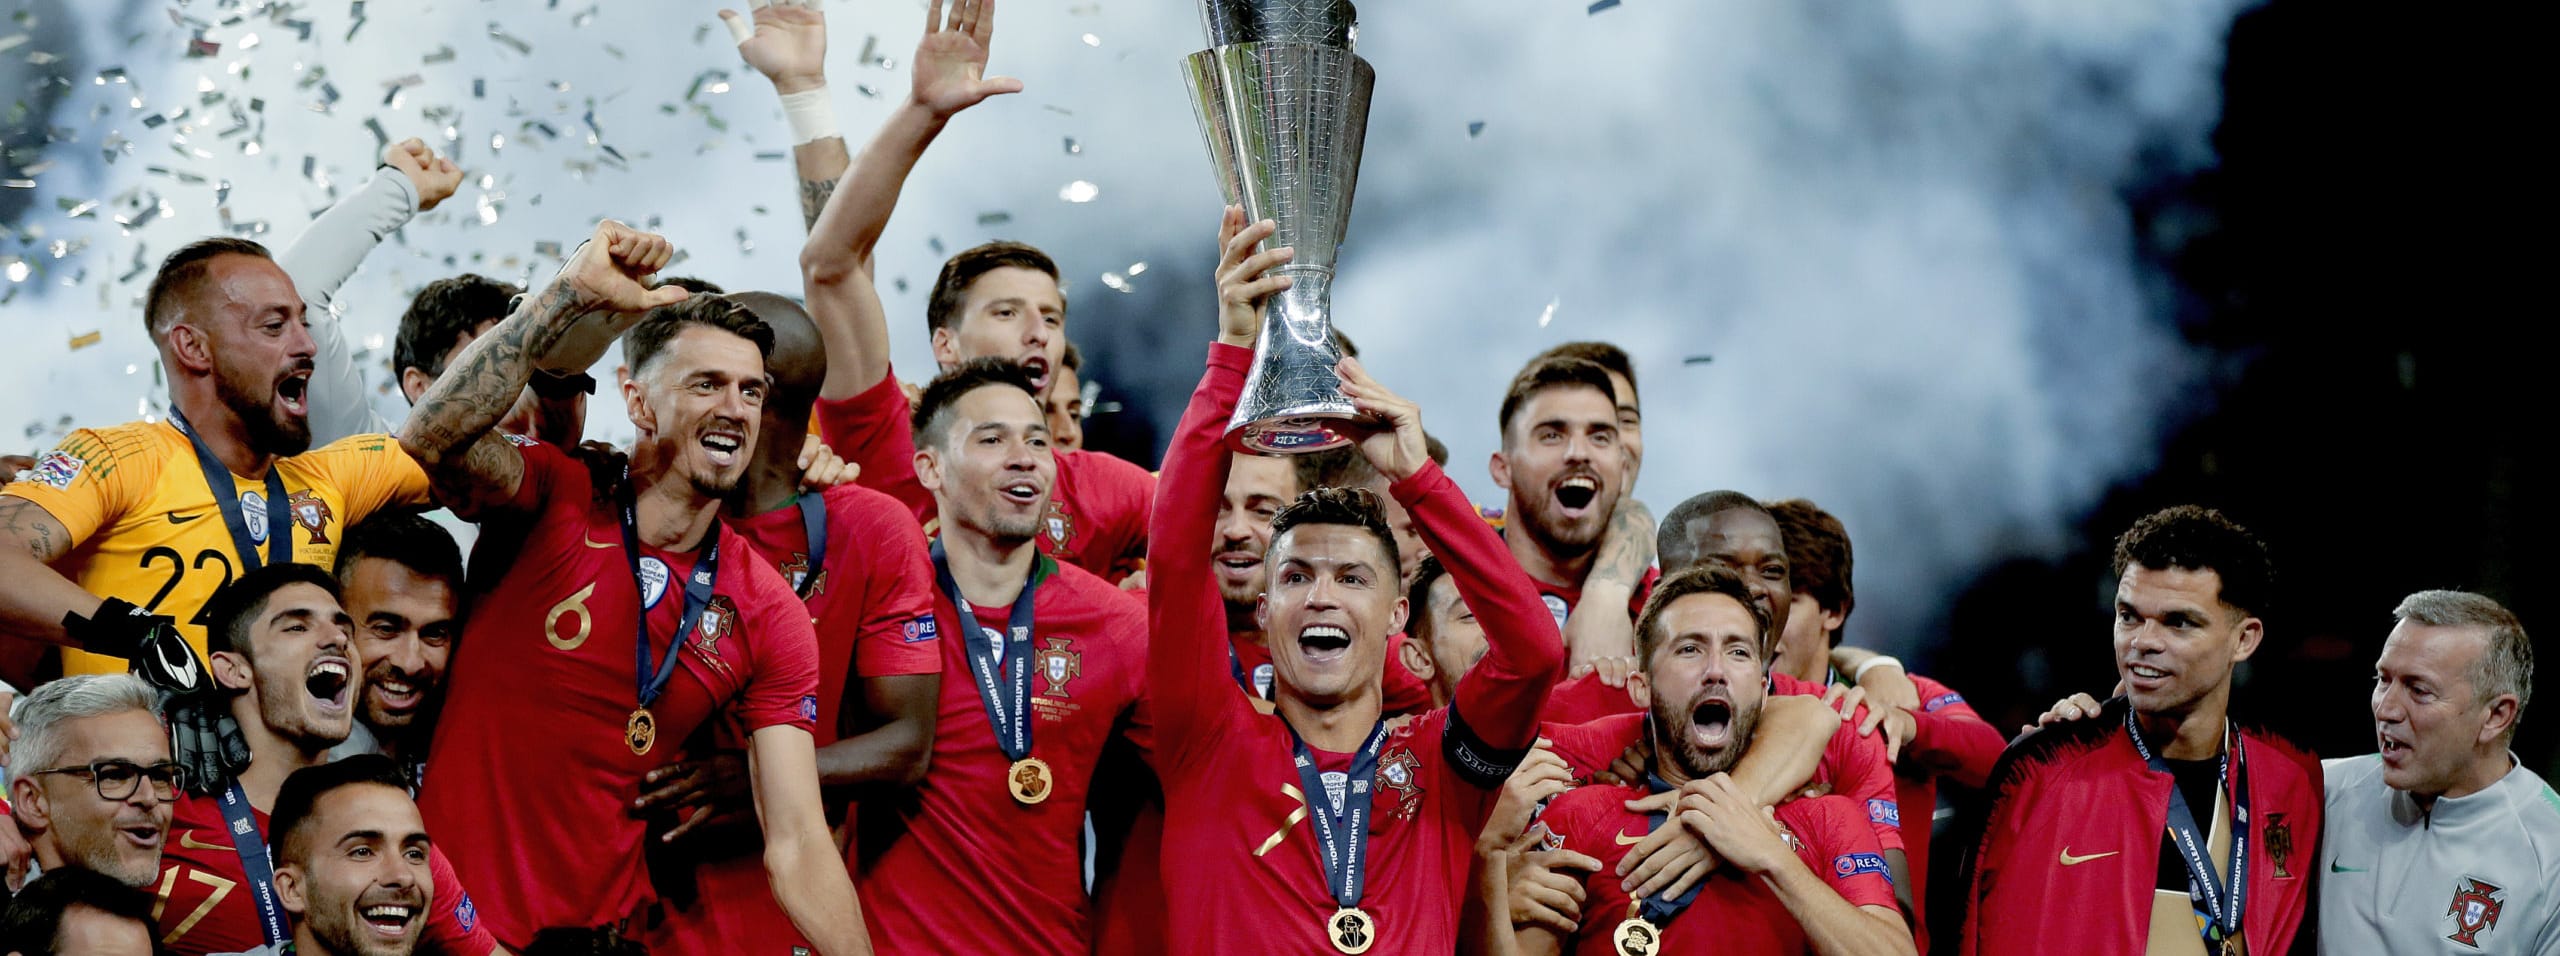 UEFA Nations League: le novità di questa edizione e le chance dell'Italia di arrivare in fondo